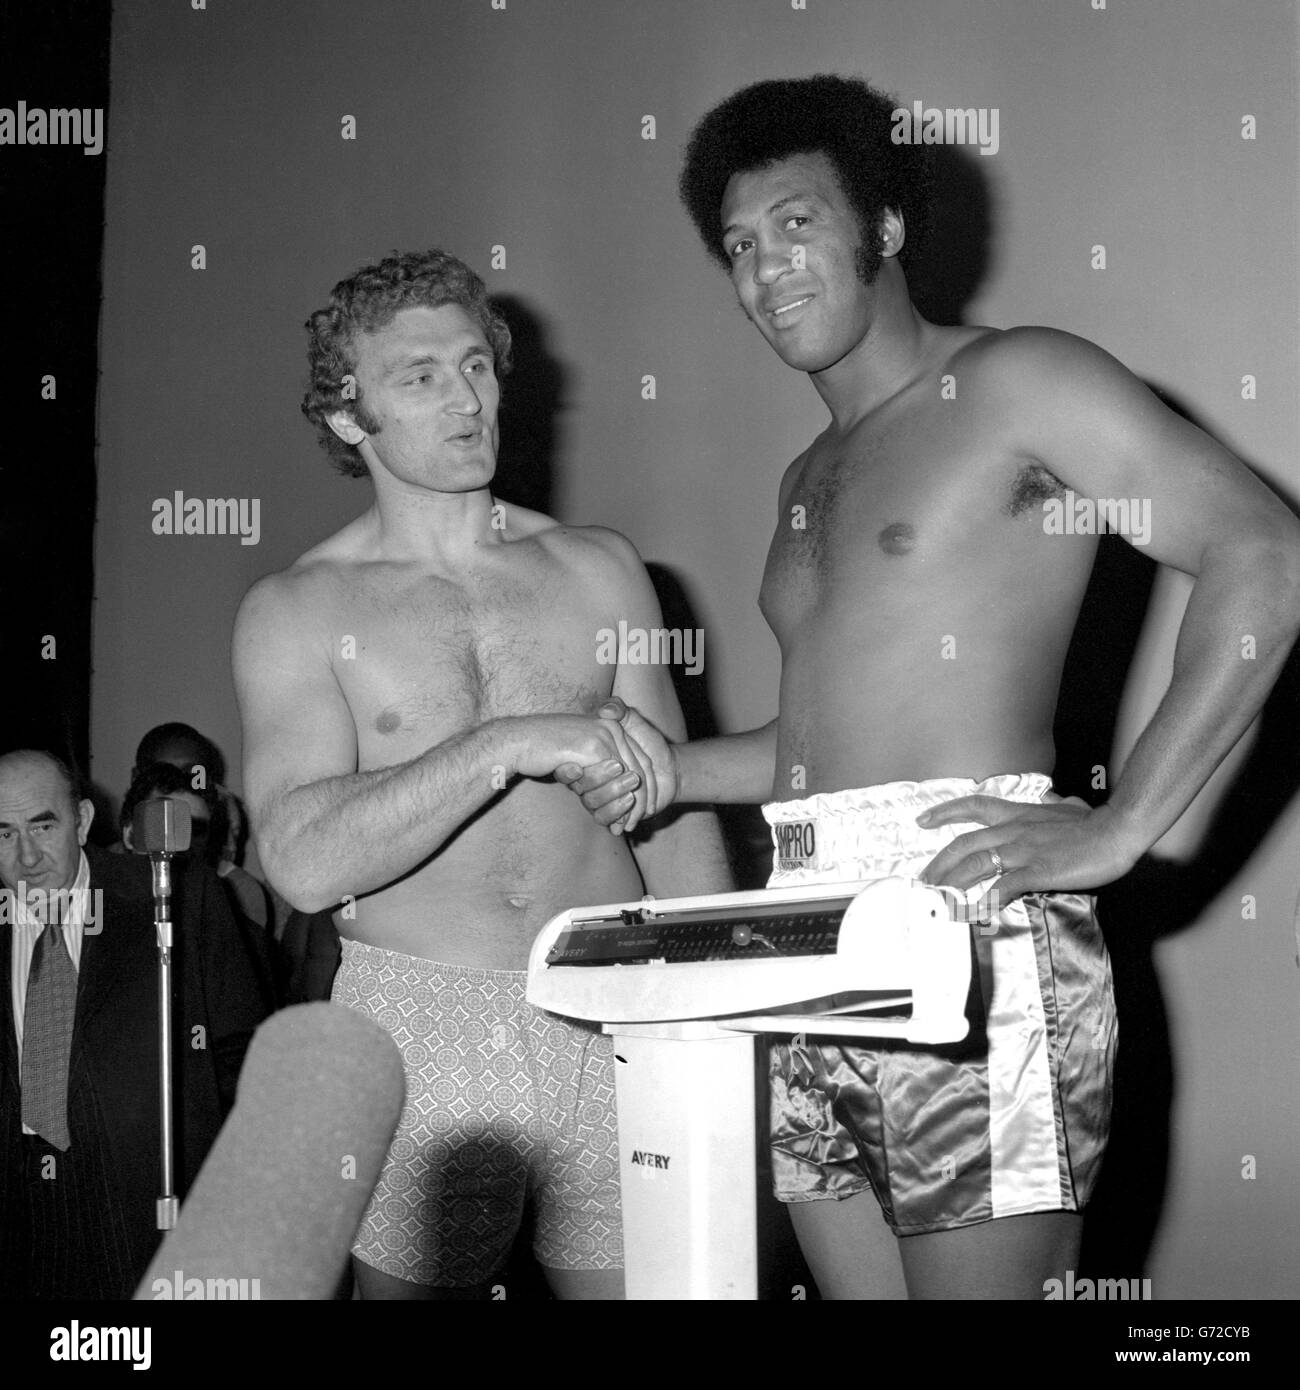 Joe Bugner (l) della Gran Bretagna e Jimmy Ellis americano durante la pesata al Dominion. Bugner ed Ellis si incontreranno nel ring di Wembley più tardi in serata. Foto Stock